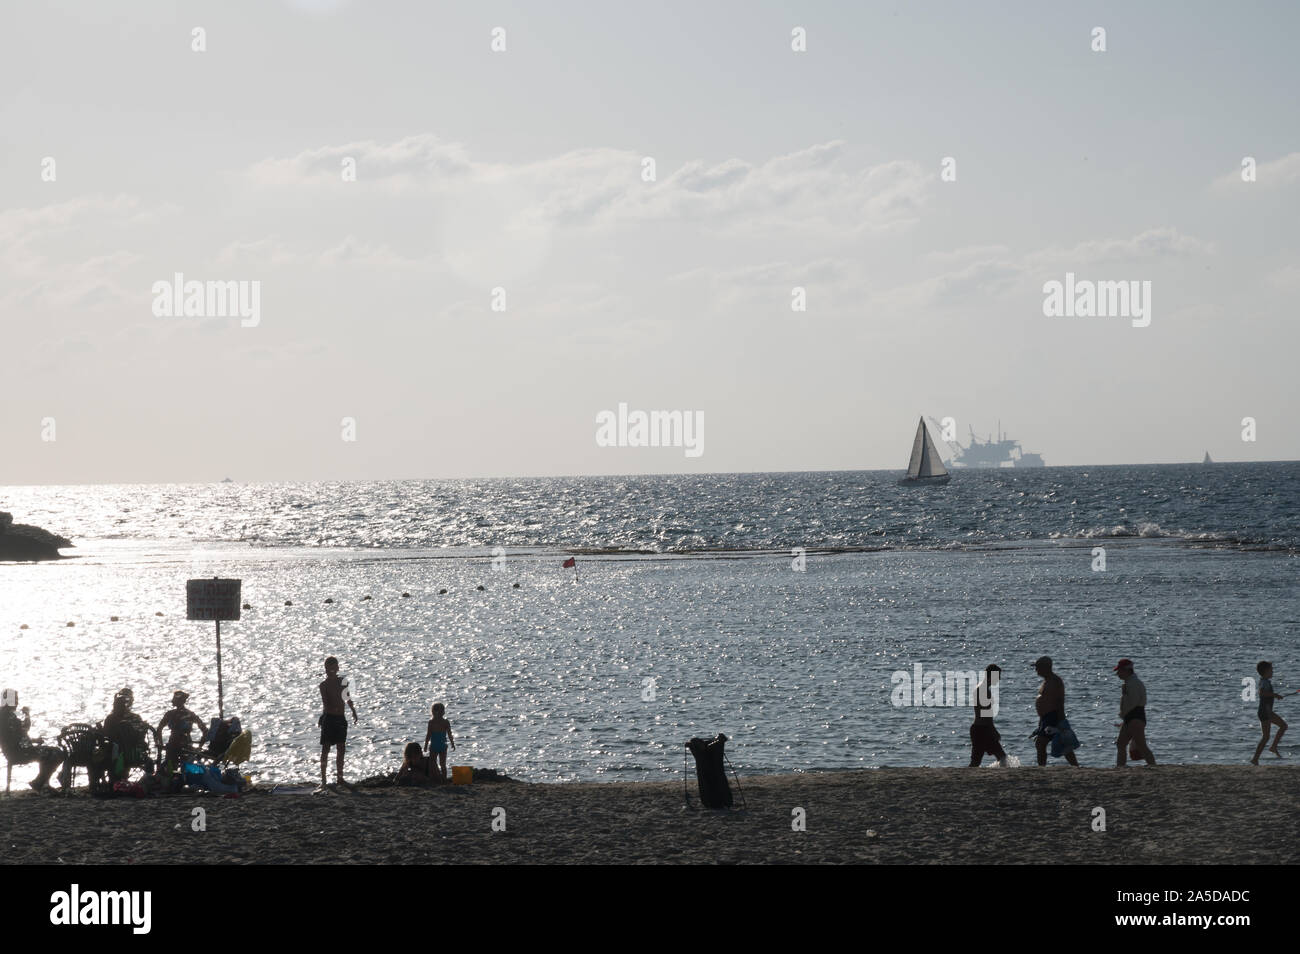 DOR STRAND, Israel/18 OKT 2019: Badegäste am Strand als Segelboot an der Vorderseite der ökologisch umstrittene offshore Bohrinsel Stockfoto